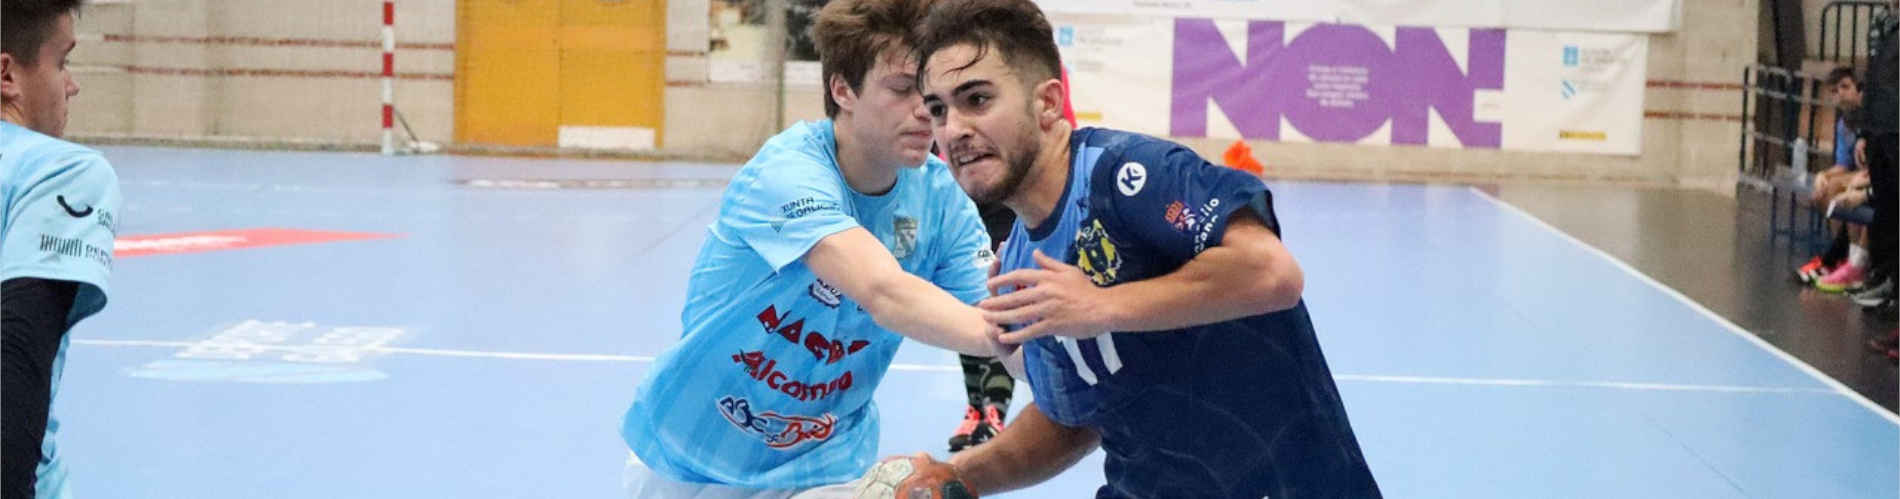 Handball: Leidenschaft und Power bei den Herren